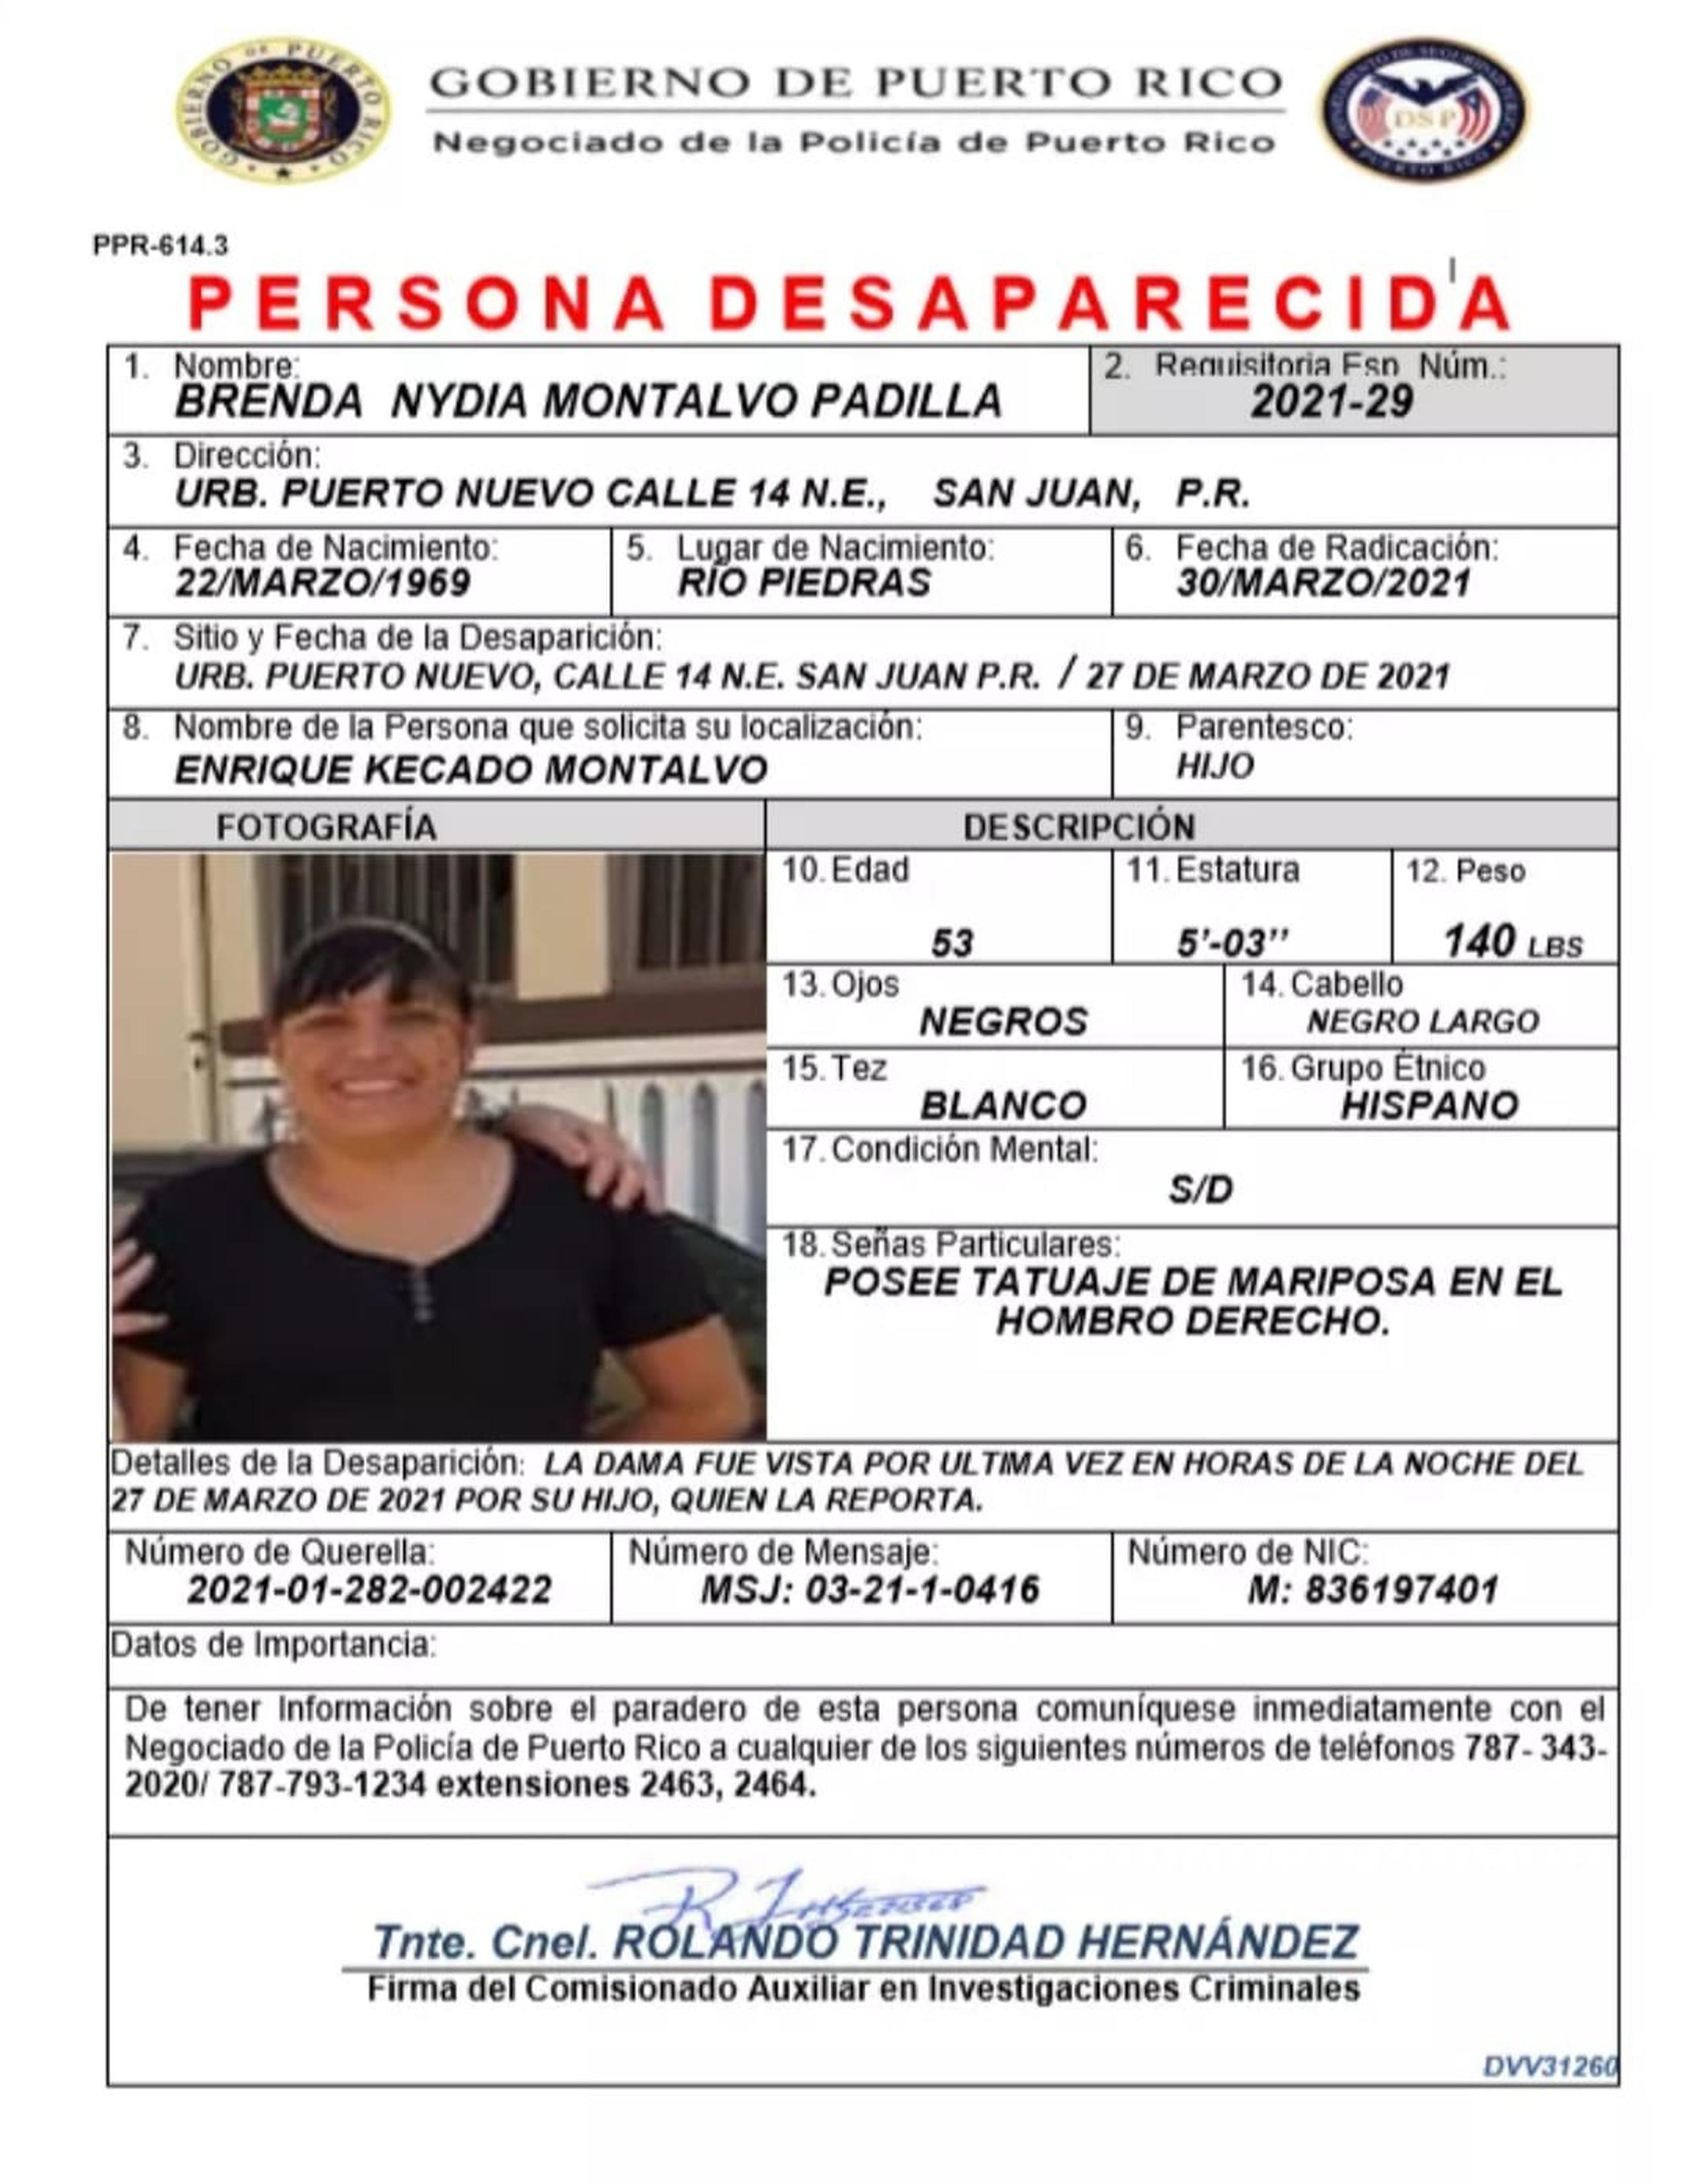 Brenda N. Montalvo Padilla, de 53 años, fue vista por última vez el sábado pasado en su residencia en Puerto Nuevo. Si usted la ha visto llame al 343-2020.